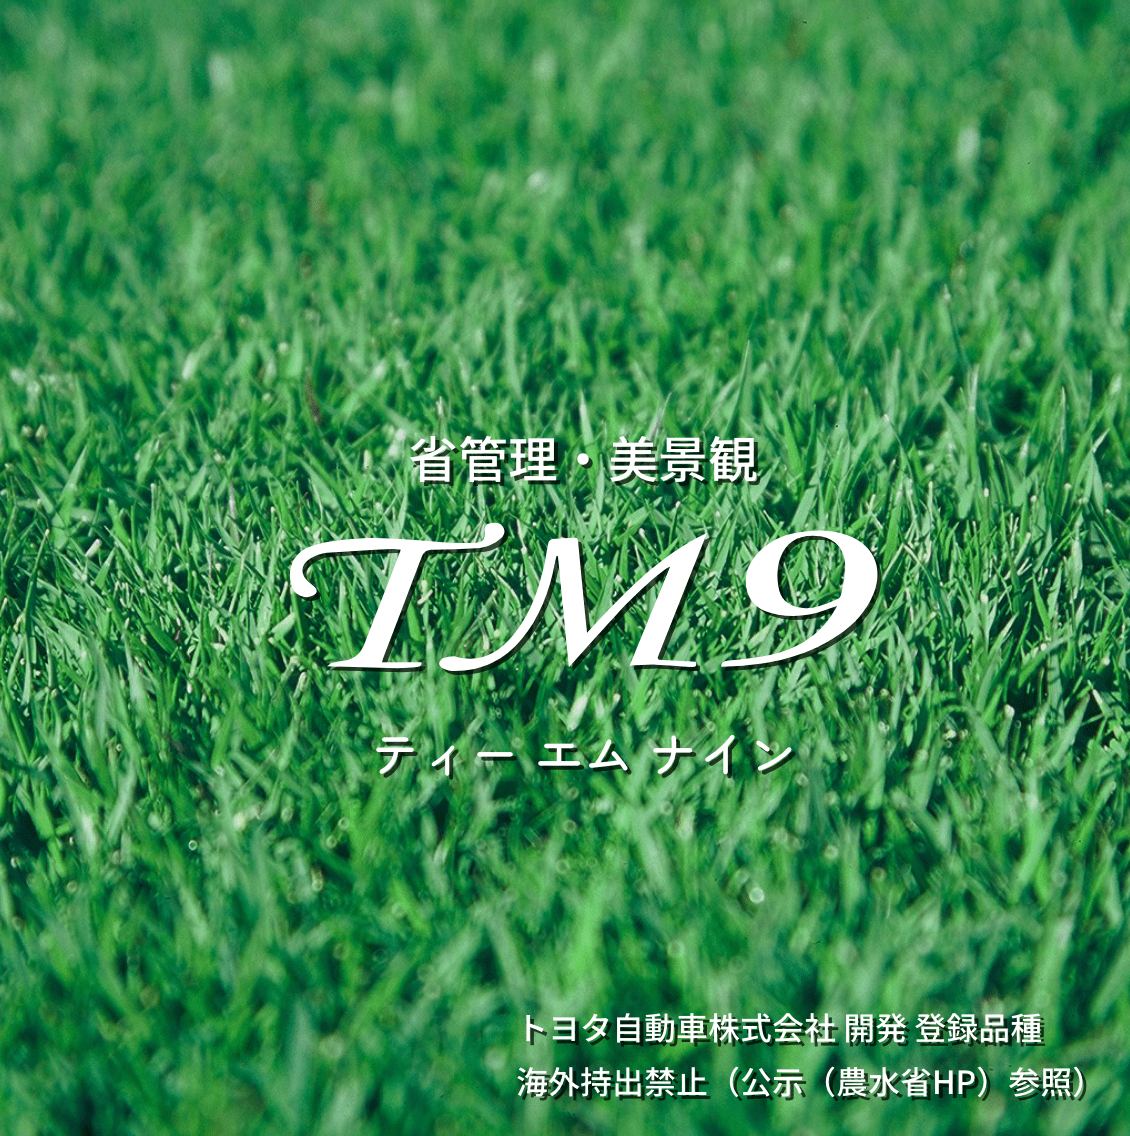 TM-9